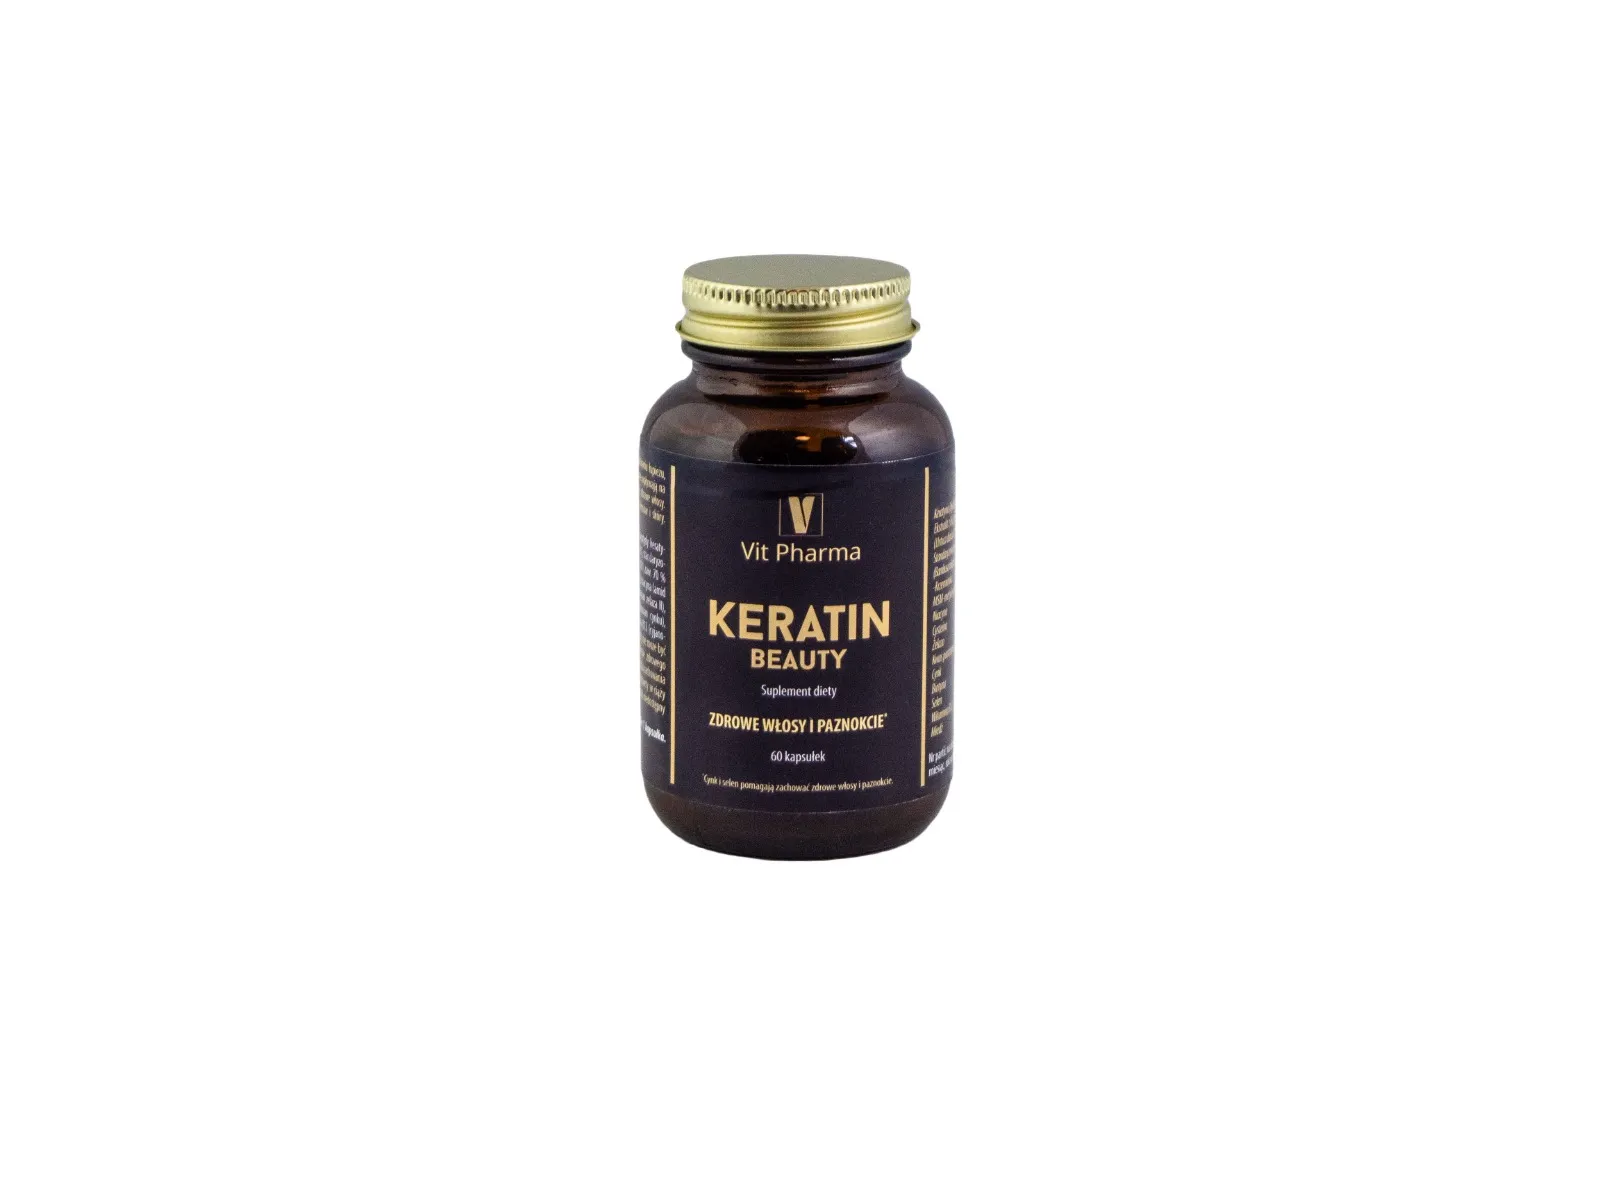 Vit Pharma Keratin Beauty, 60 kapsułek